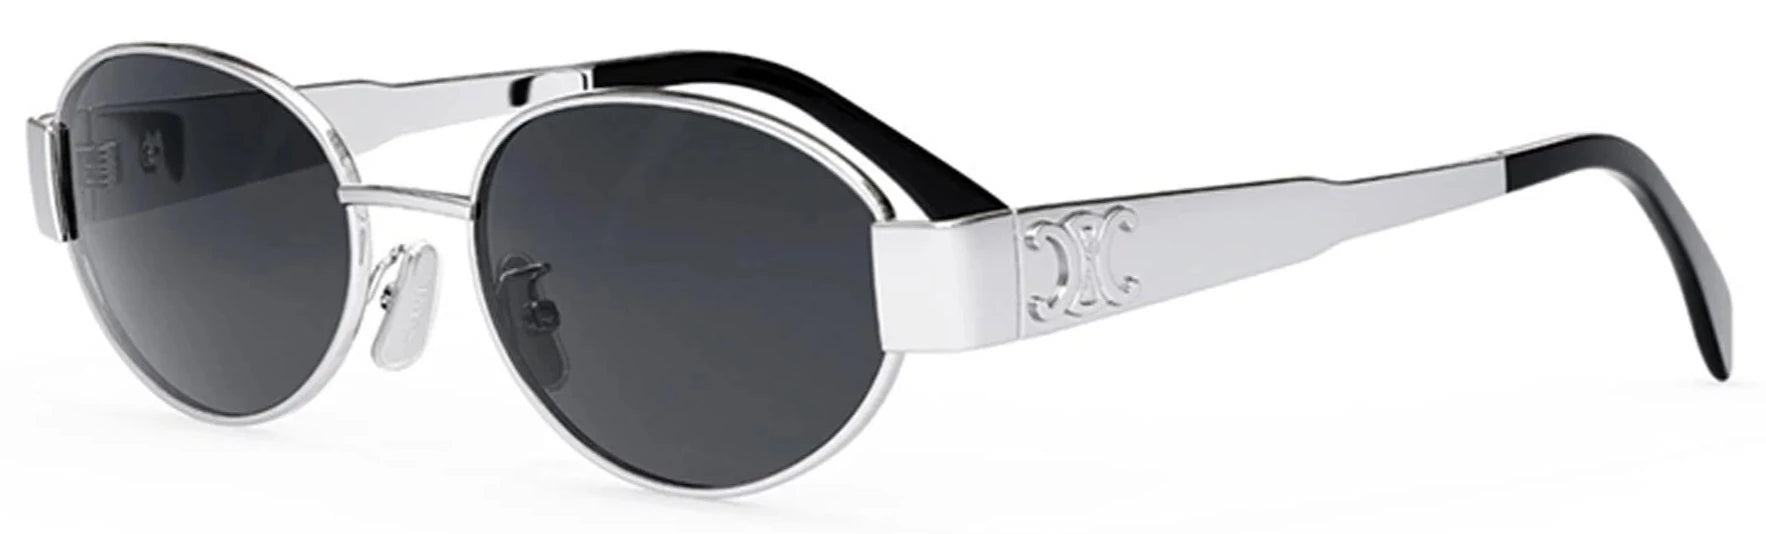 Alexander Daas - Celine CL40235U Sunglasses - Silver - Side View